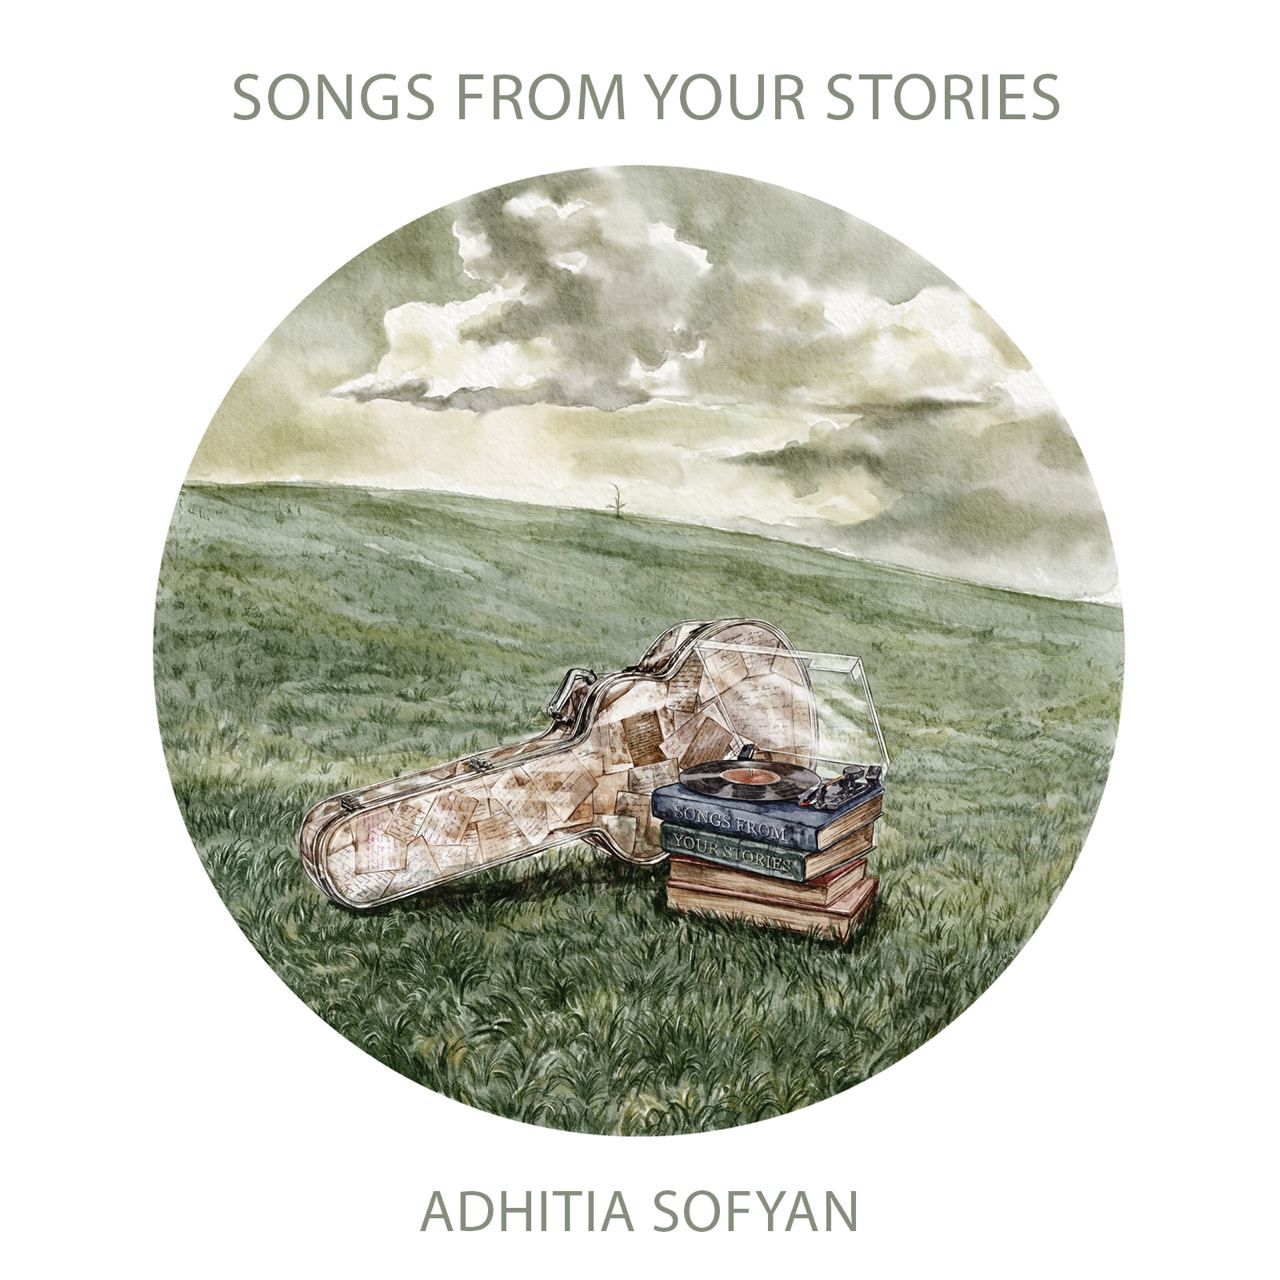 Cerita 'STAY IN MY ROOM' dari Adhitia Sofyan di Album Terbarunya, SONGS FROM YOUR STORIES